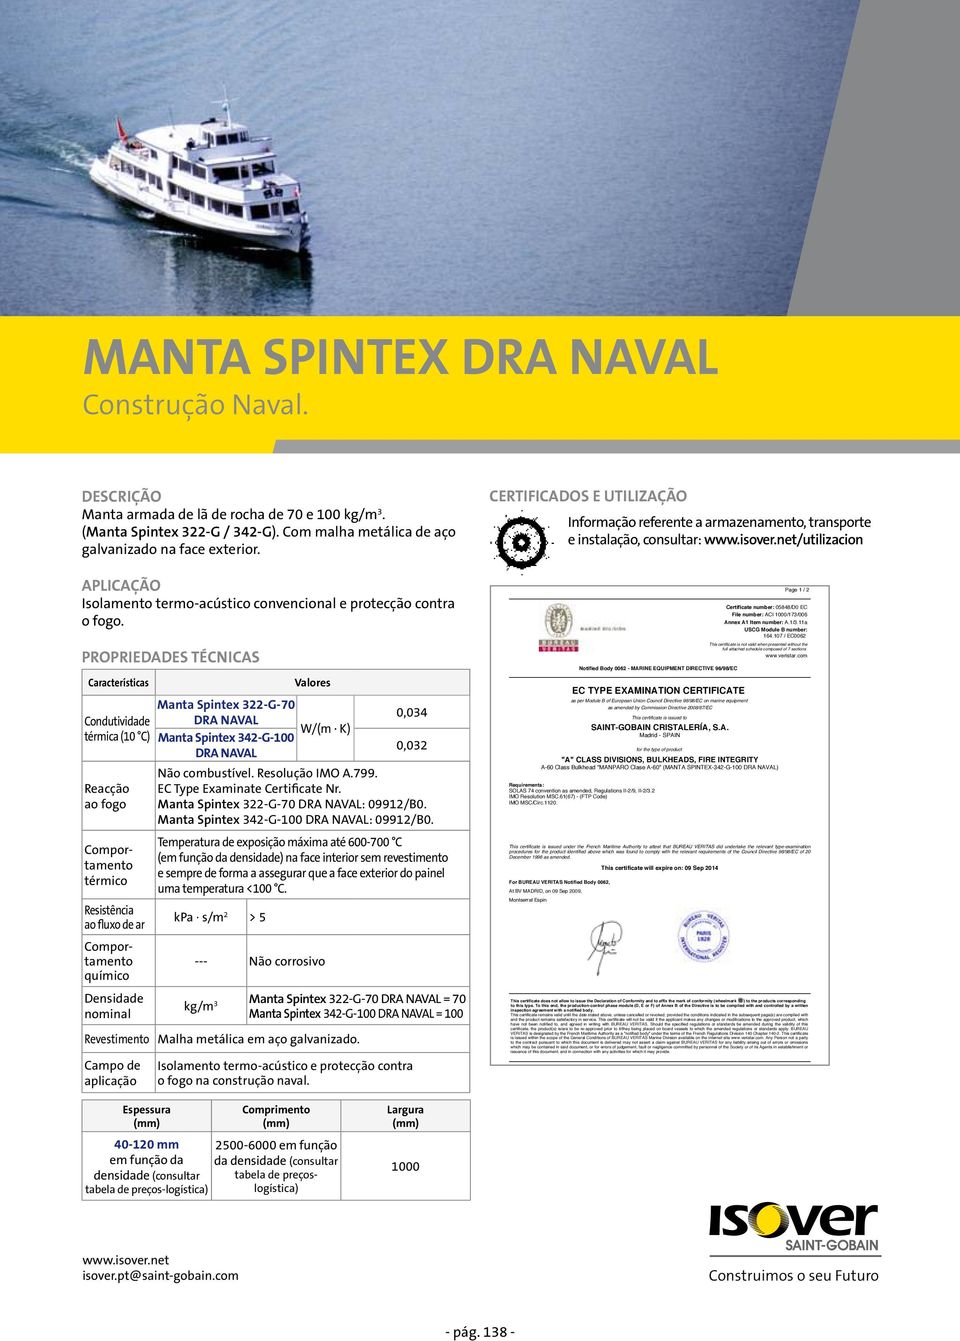 Manta Spintex 322-G-70 DRA NAVAL térmica (10 C) Manta Spintex 342-G-100 DRA NAVAL ao fluxo de ar químico Revestimento 0,034 0,032 Manta Spintex 322-G-70 DRA NAVAL: 09912/B0.